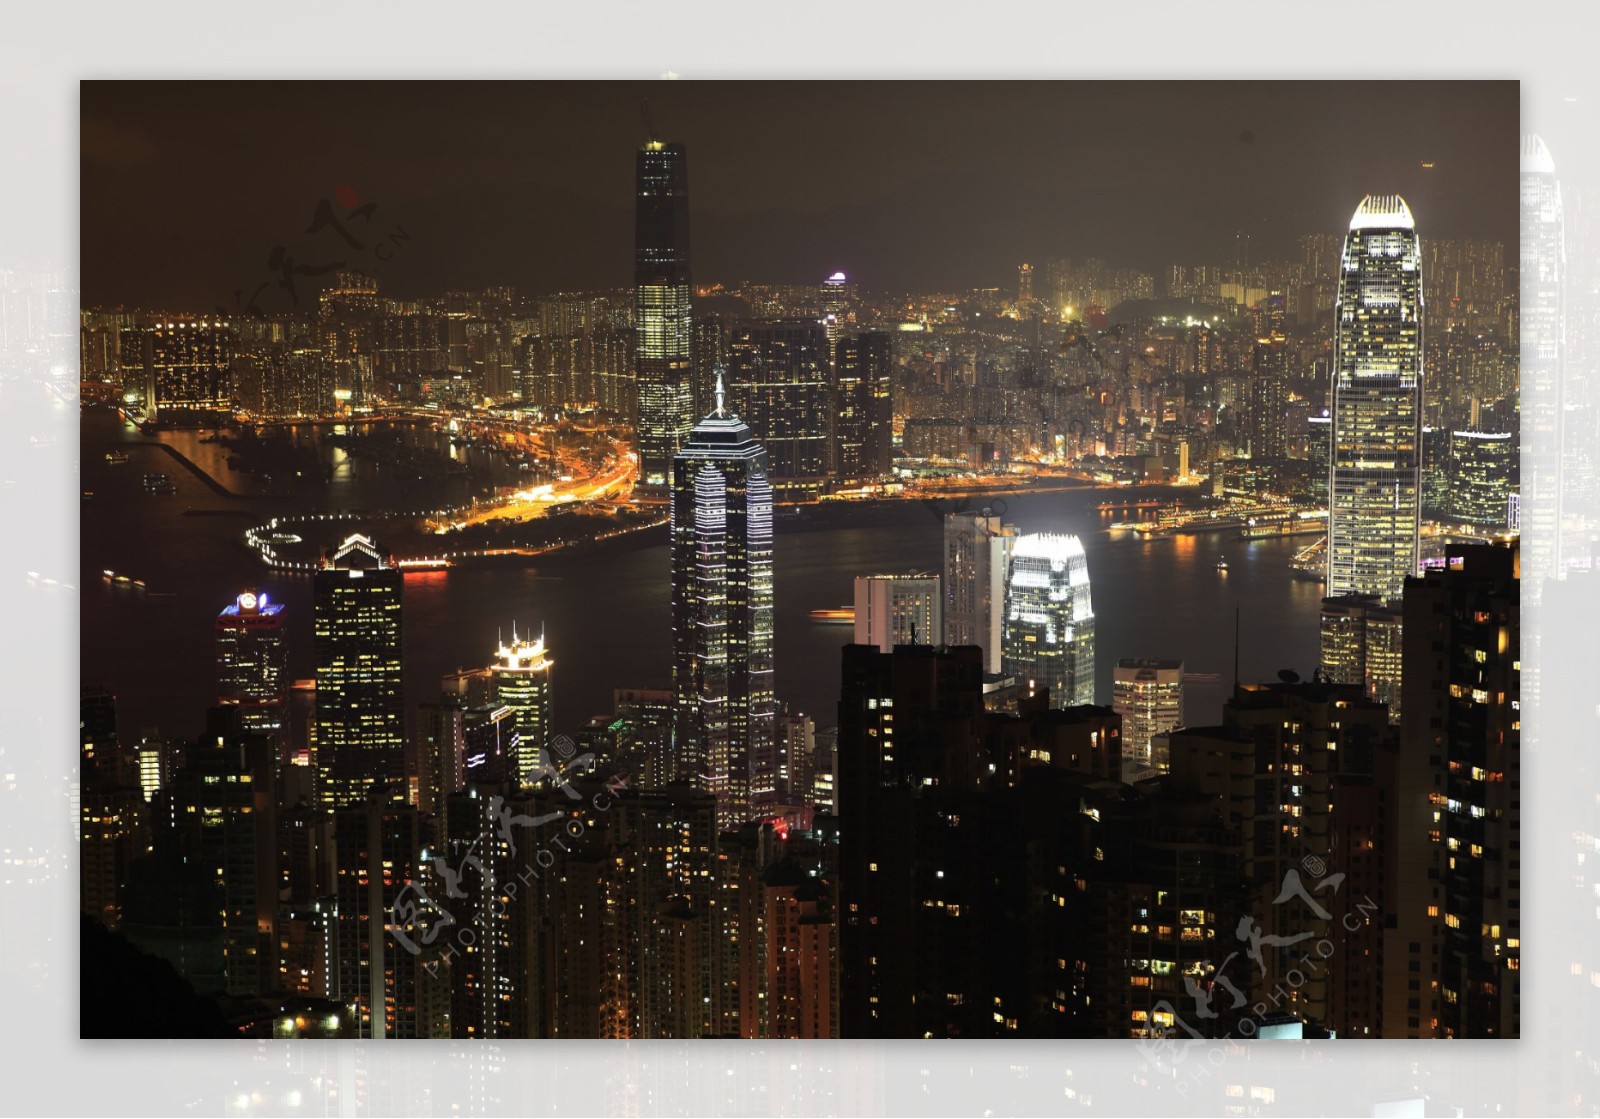 香港夜景俯览图片